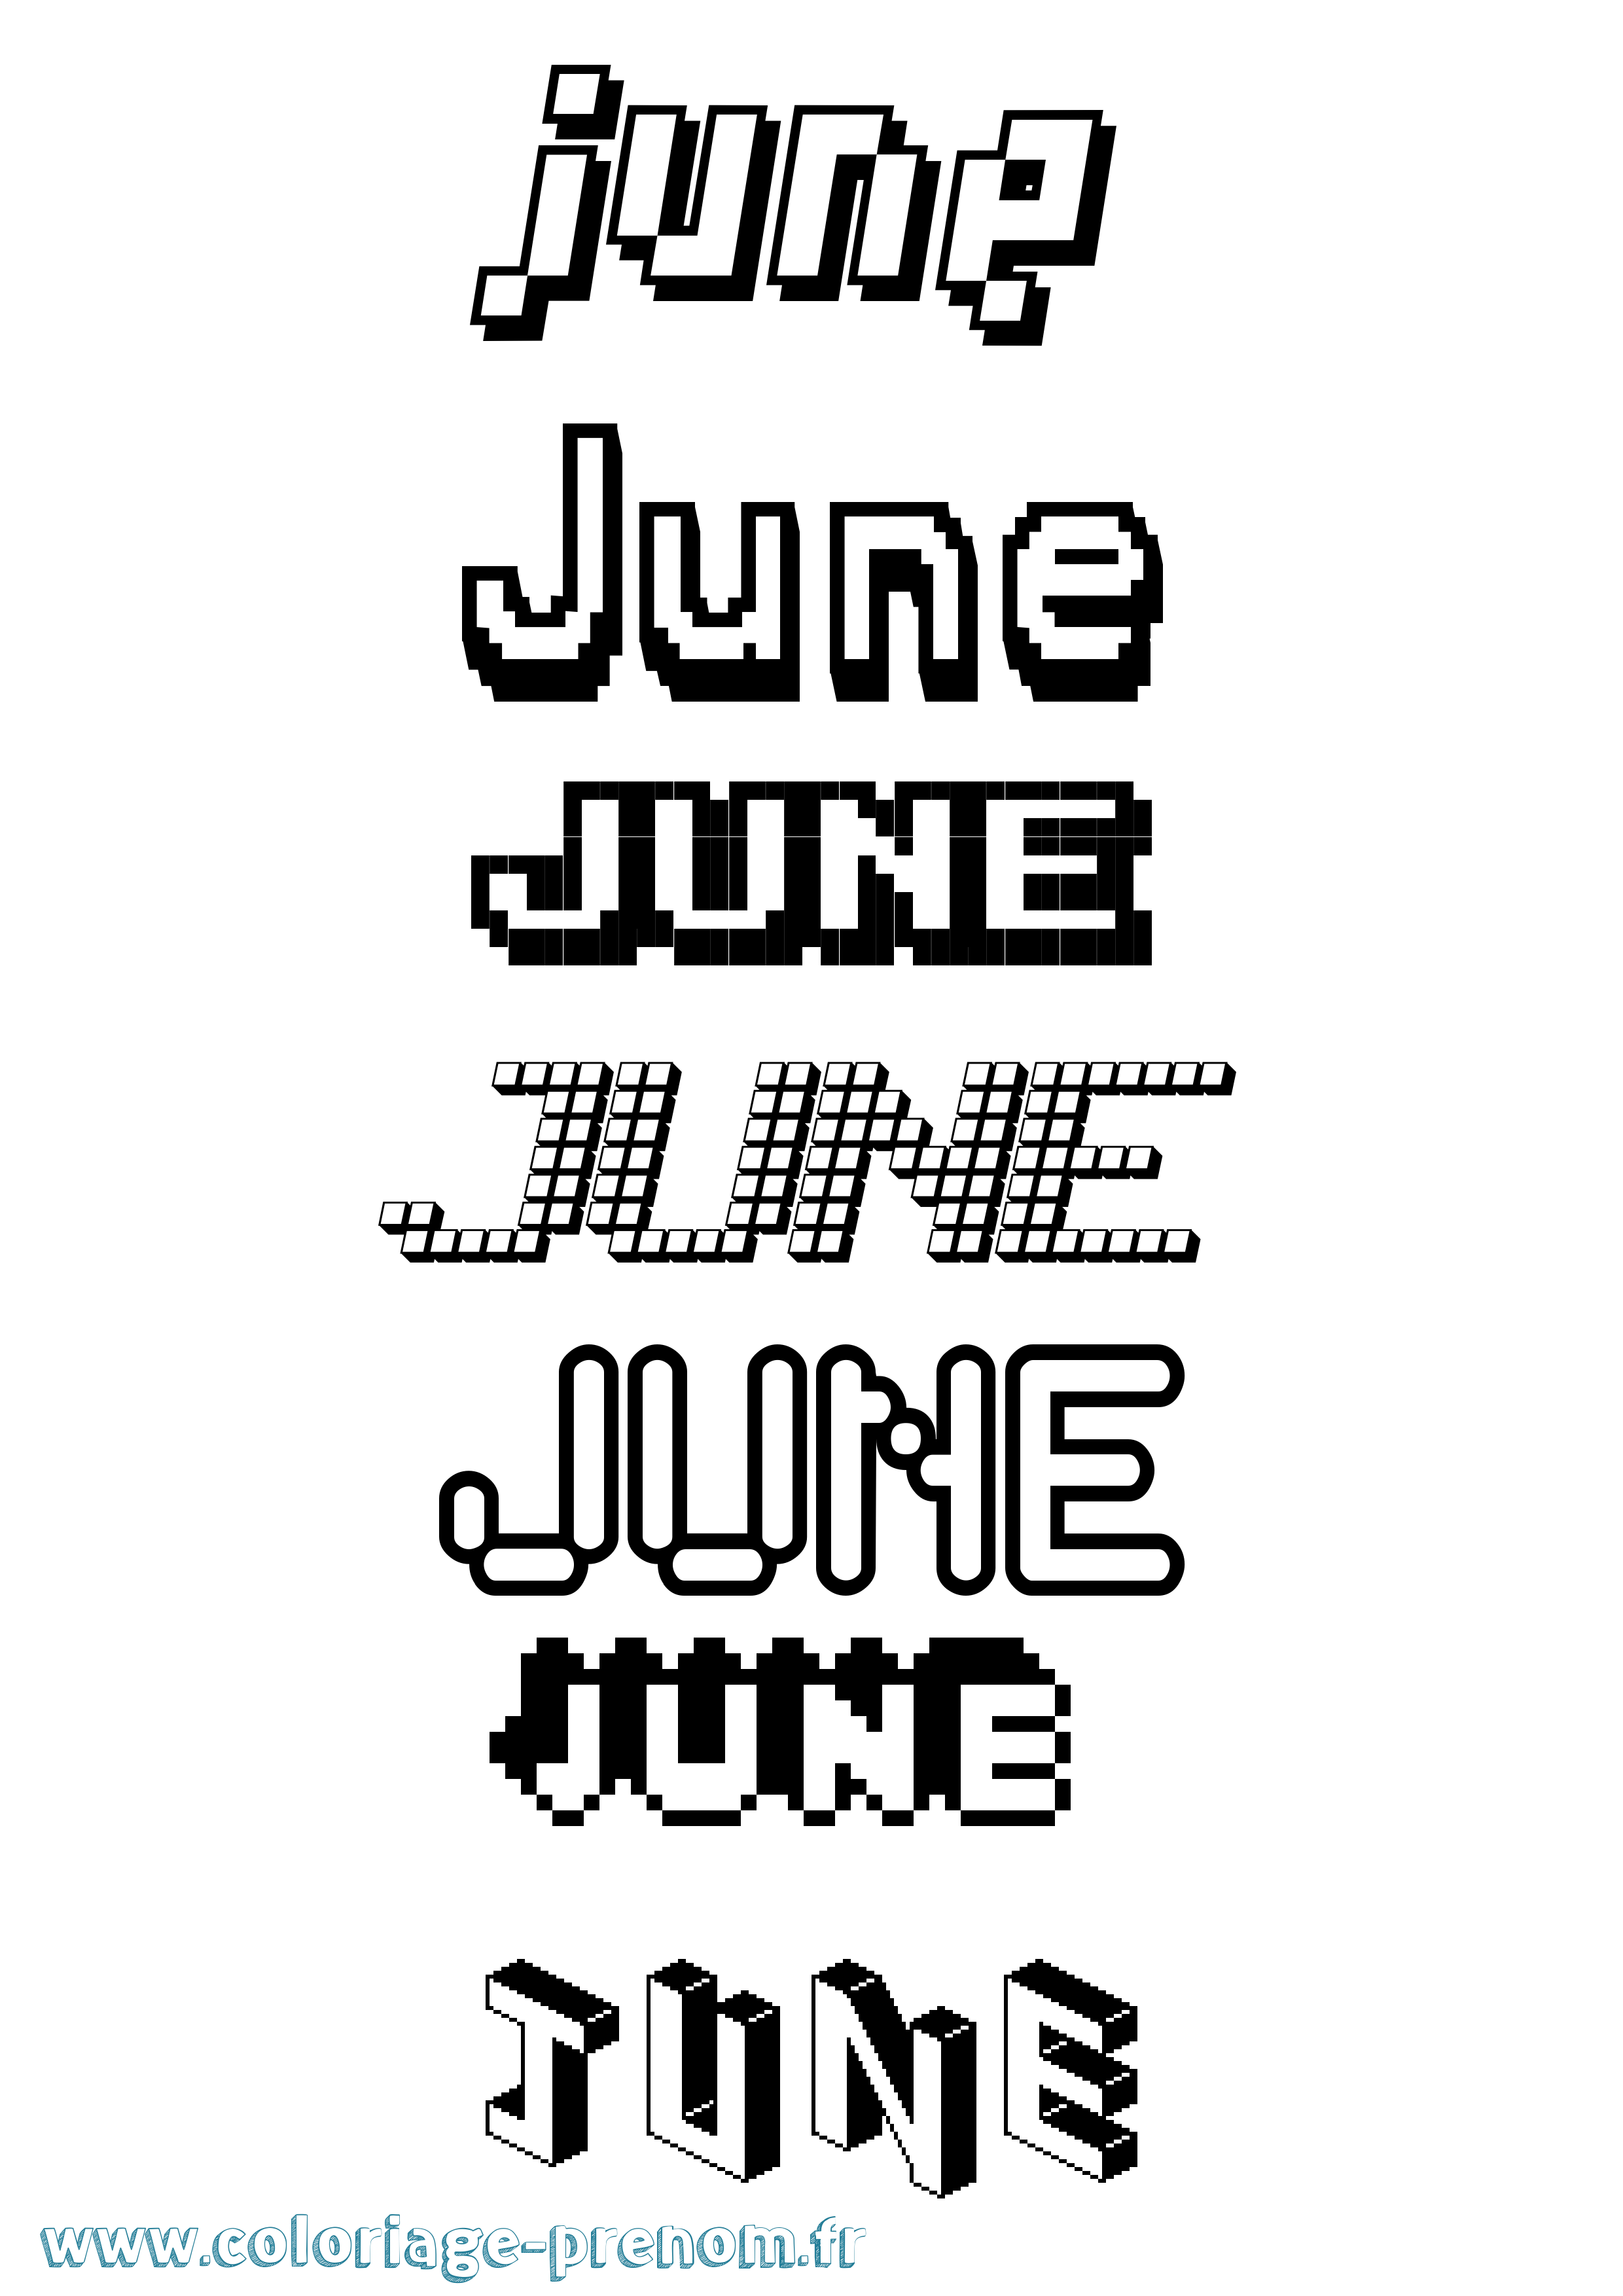 Coloriage prénom June Pixel